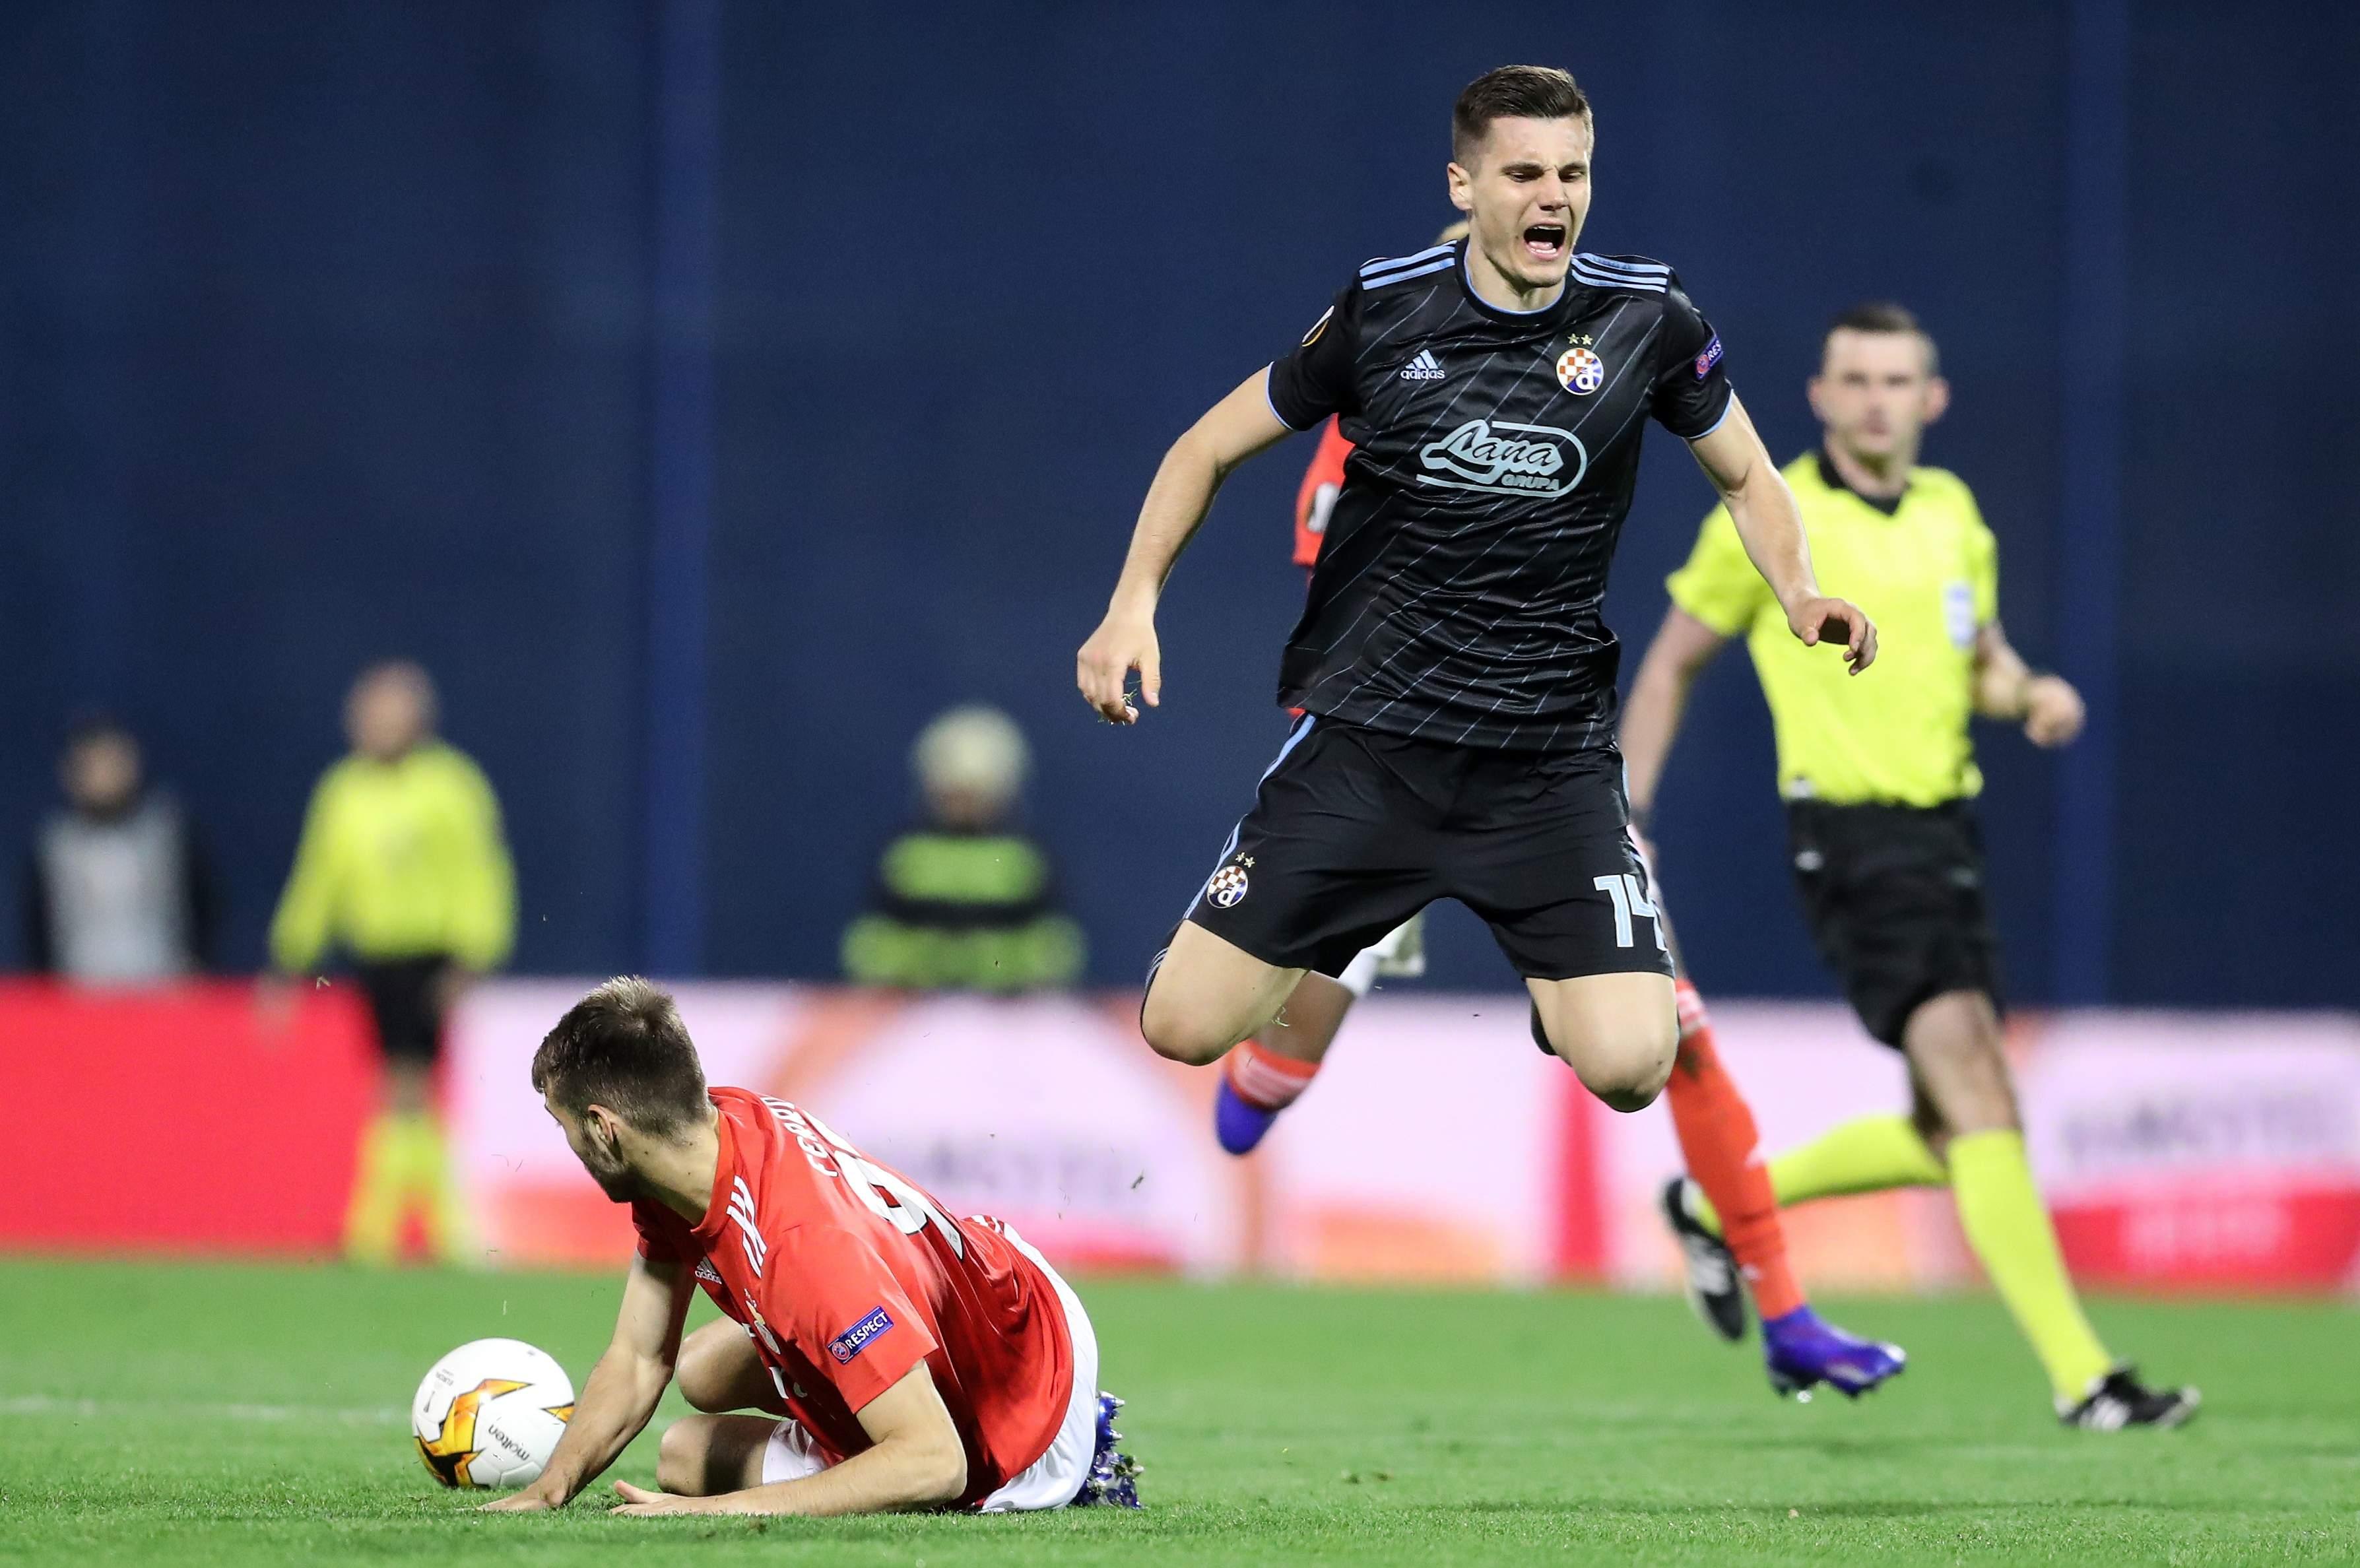 Raskinuta posudba s Torinom, Gojak se vraća u Dinamo